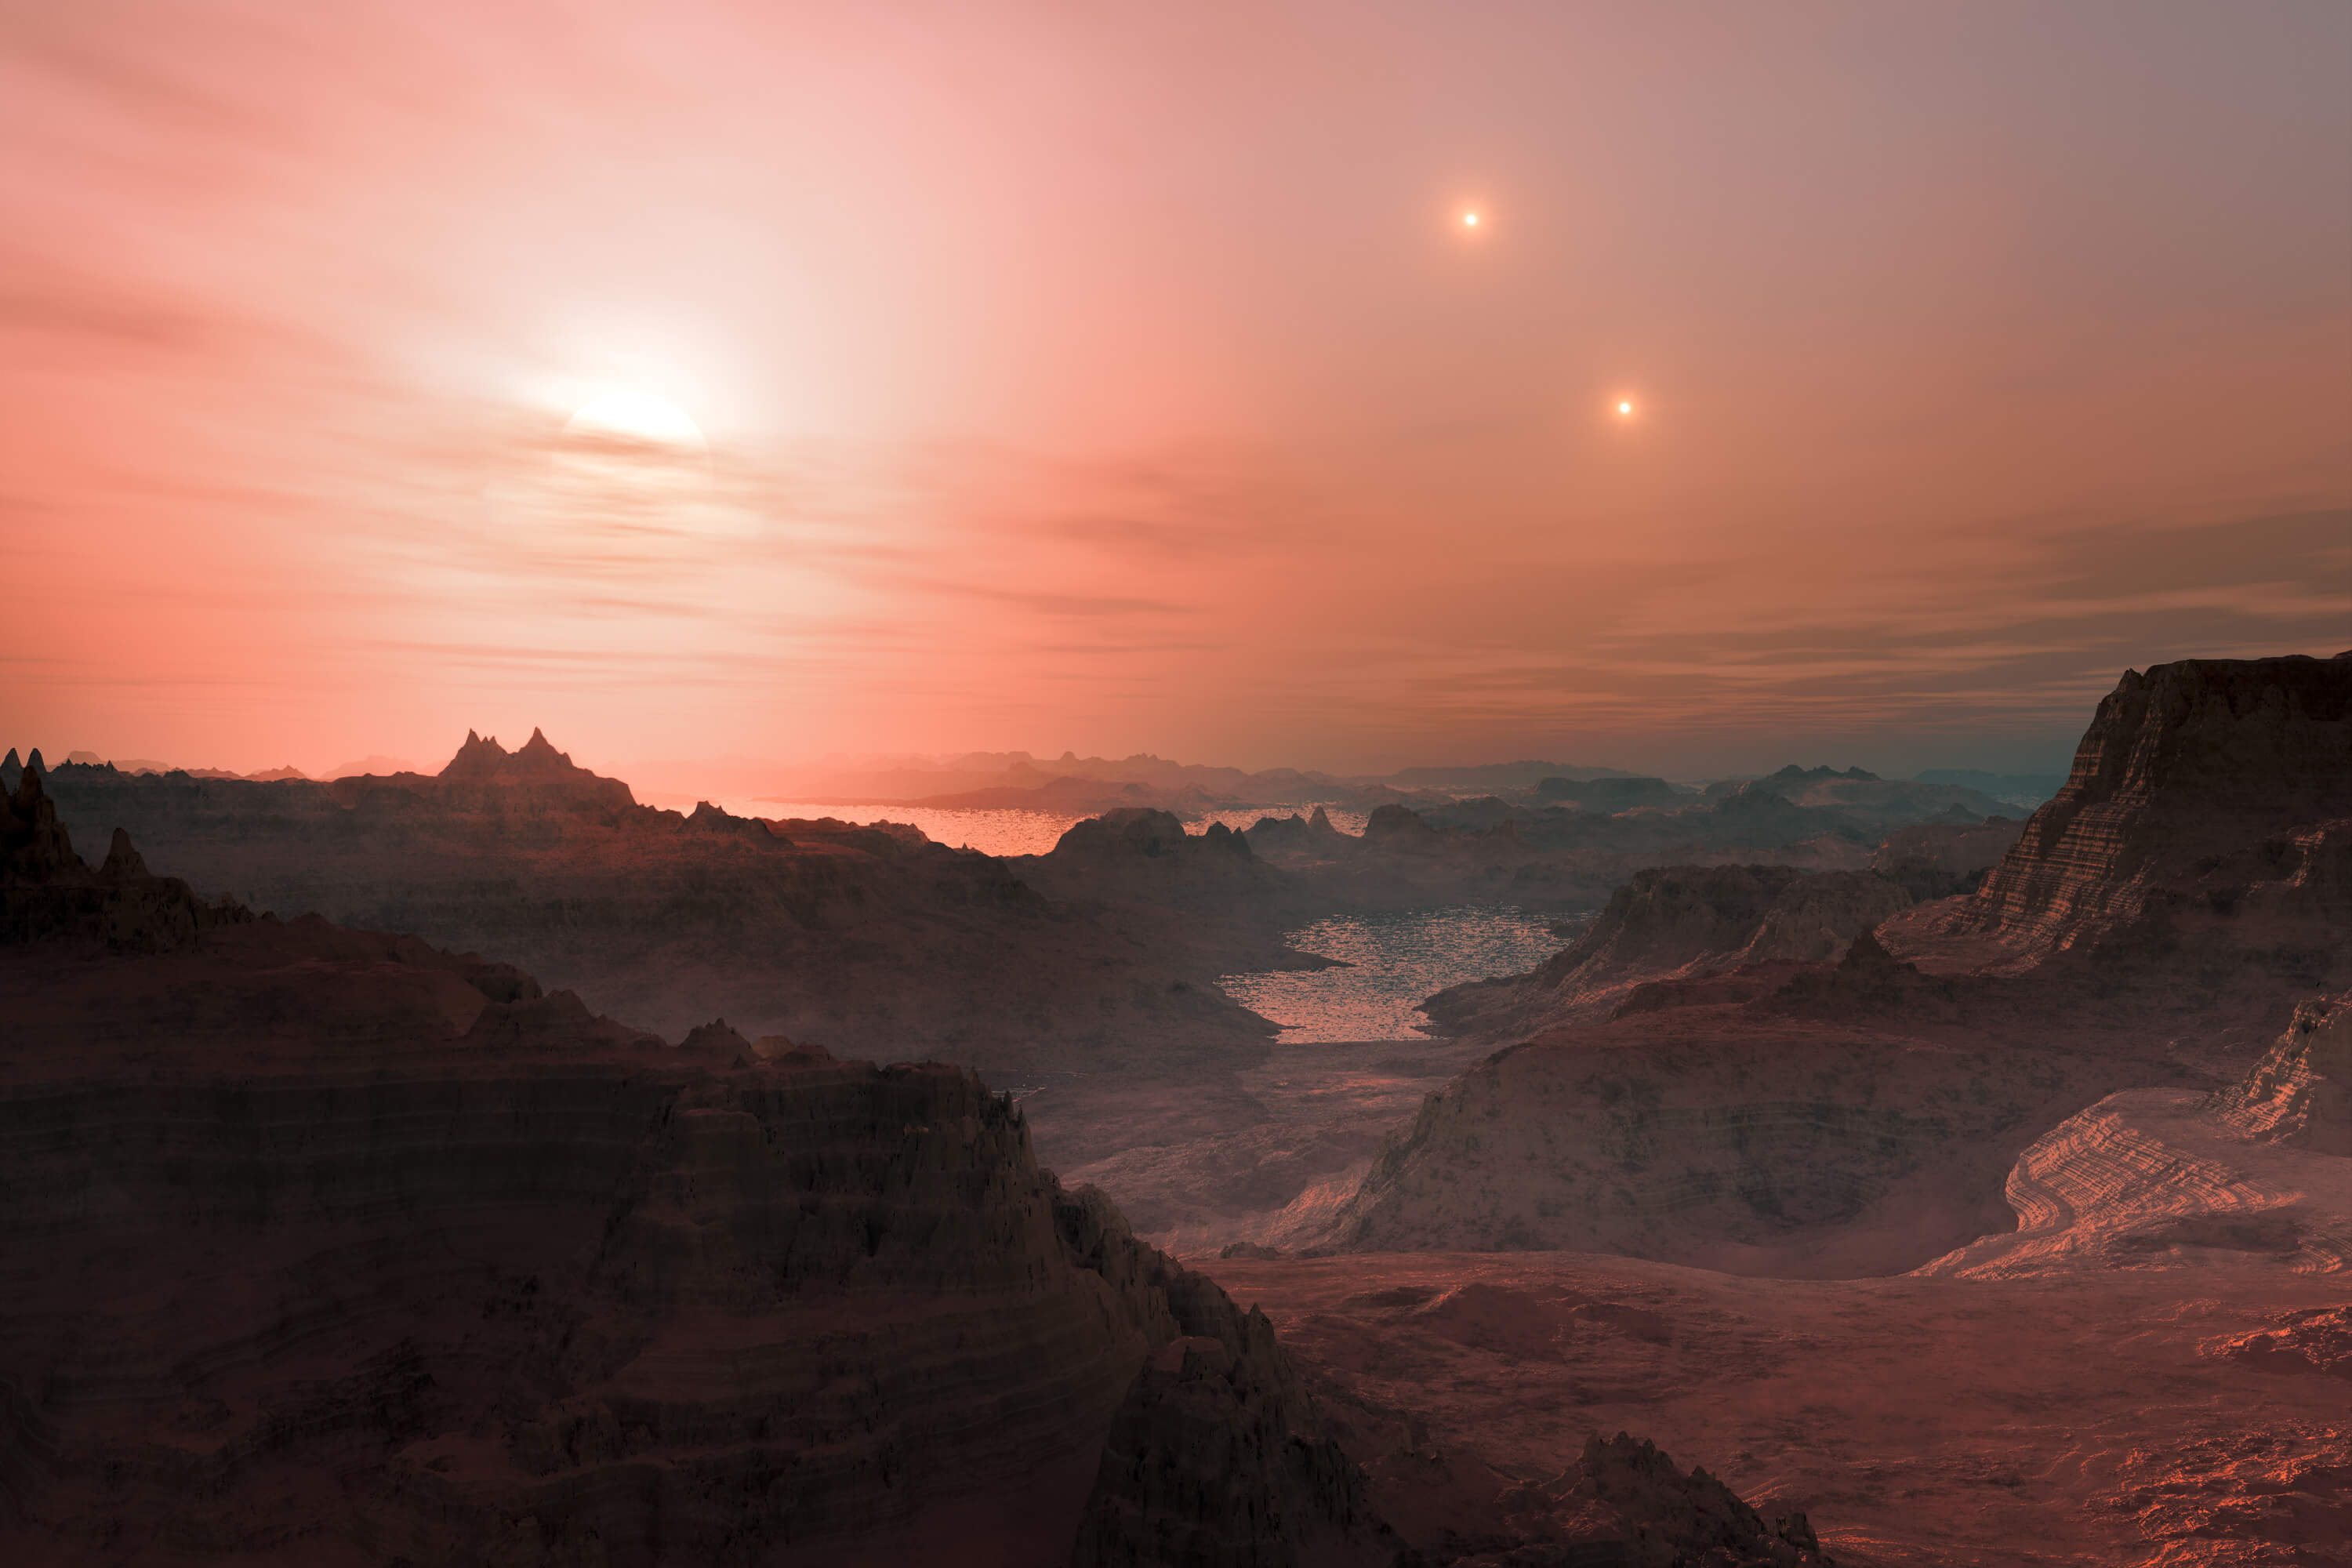 Есть ли люди на Gliese 581g? Далеко не факт, что там живут люди. Но жизнь может быть. Фото.